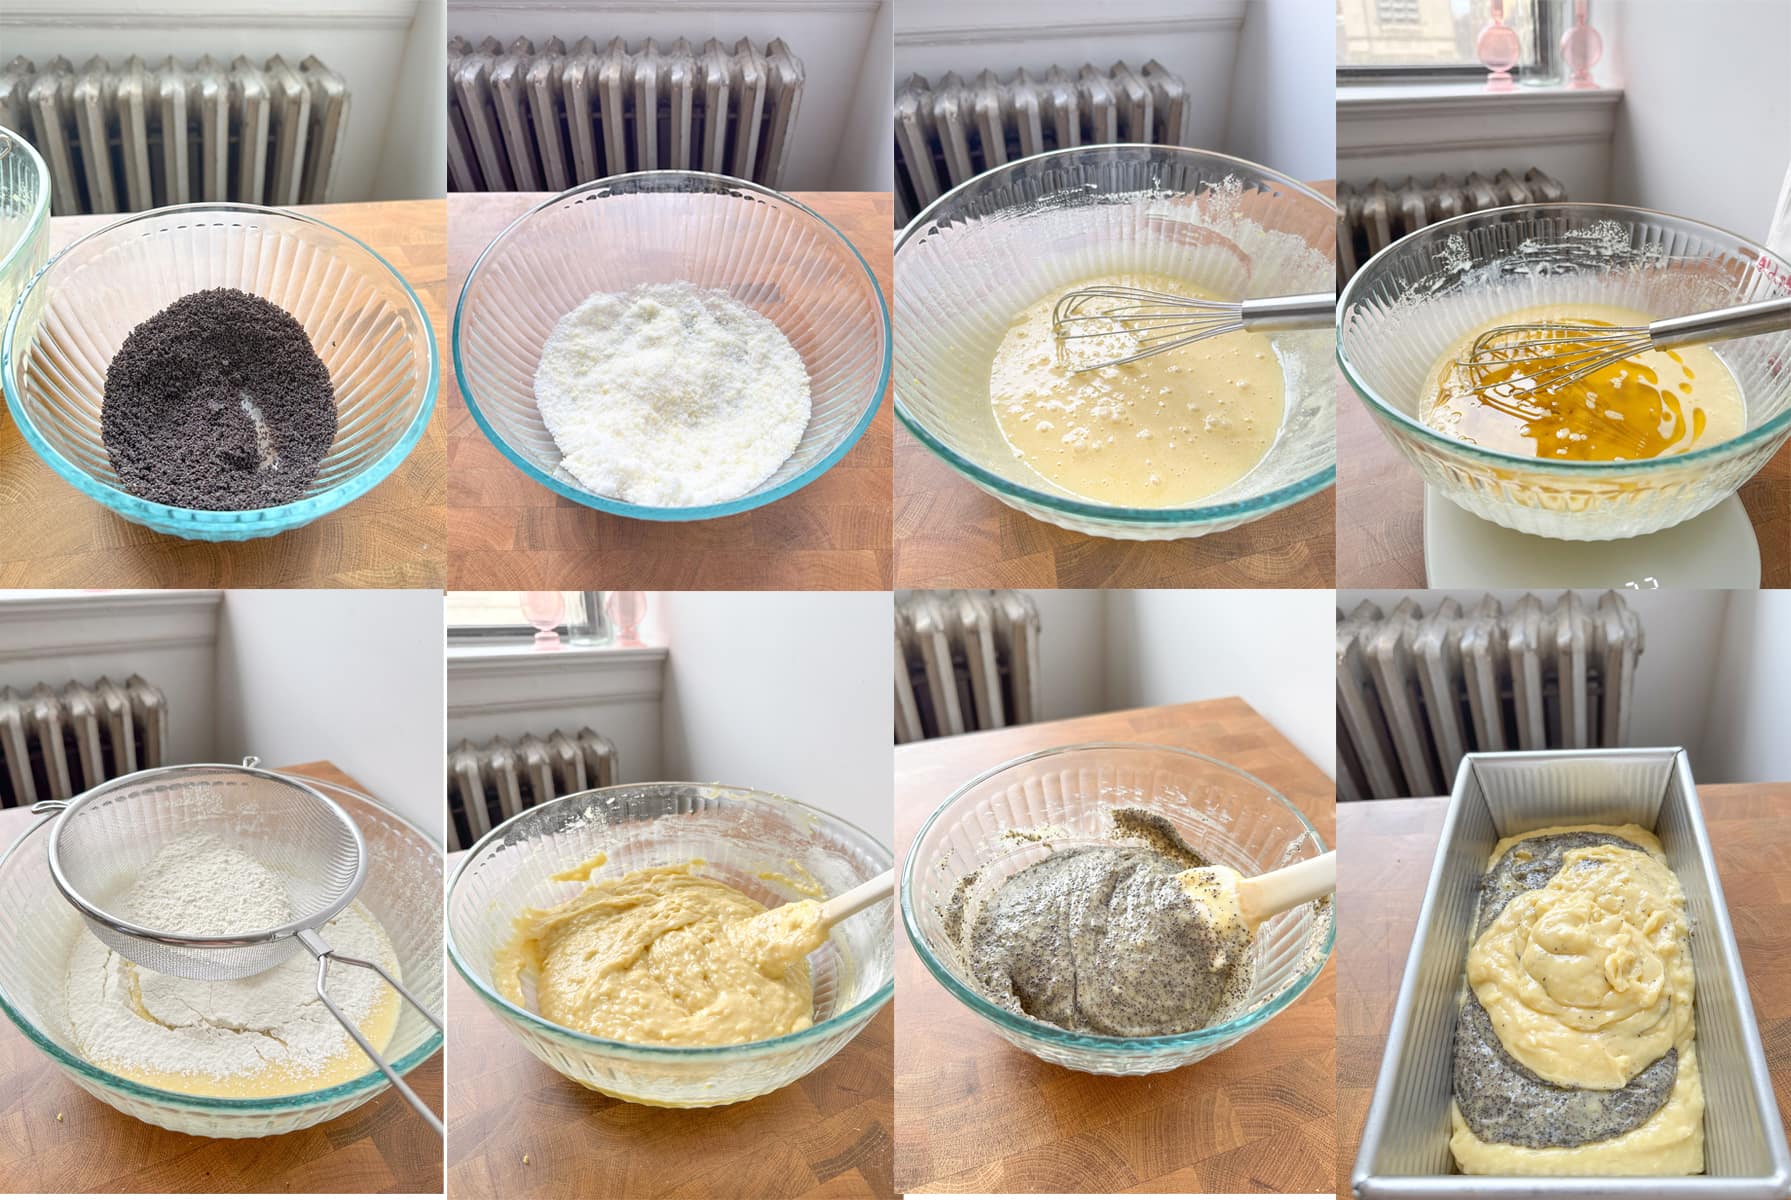 Process images showing how to make the regular lemon cake batter and the lemon poppyseed cake batter.